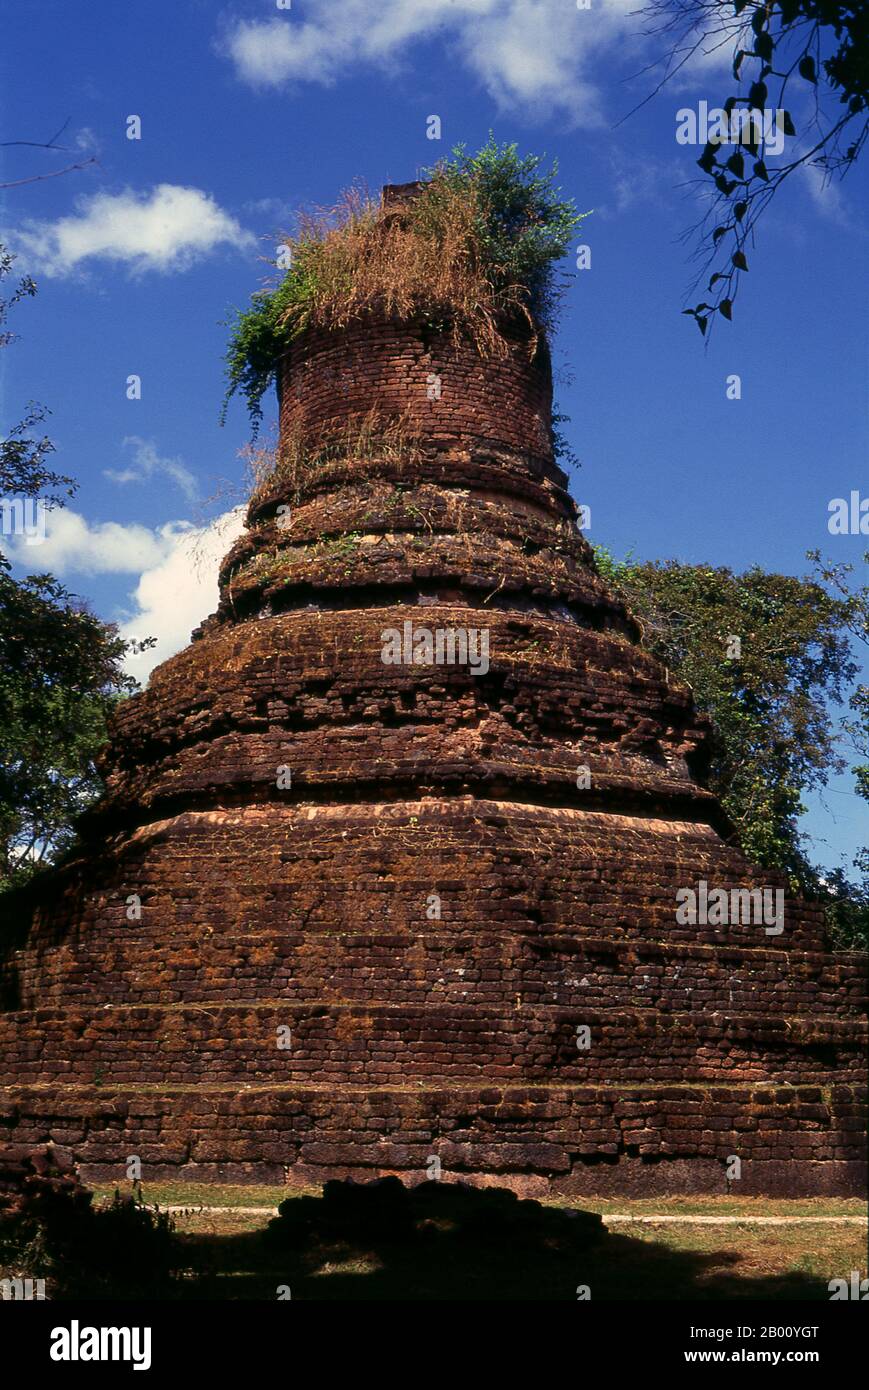 Thailandia: Chedi, Wat Phra non, Kamphaeng Phet Parco storico. Kamphaeng Phet Historical Park nel centro della Thailandia era una volta parte del regno di Sukhothai che fiorì nel XIII e XIV secolo. Il regno di Sukhothai fu il primo dei regni tailandesi. Sukhothai, che letteralmente significa "Alba della felicità", fu la capitale del regno di Sukhothai e fu fondata nel 1238. Fu la capitale dell'Impero Tailandese per circa 140 anni. Foto Stock